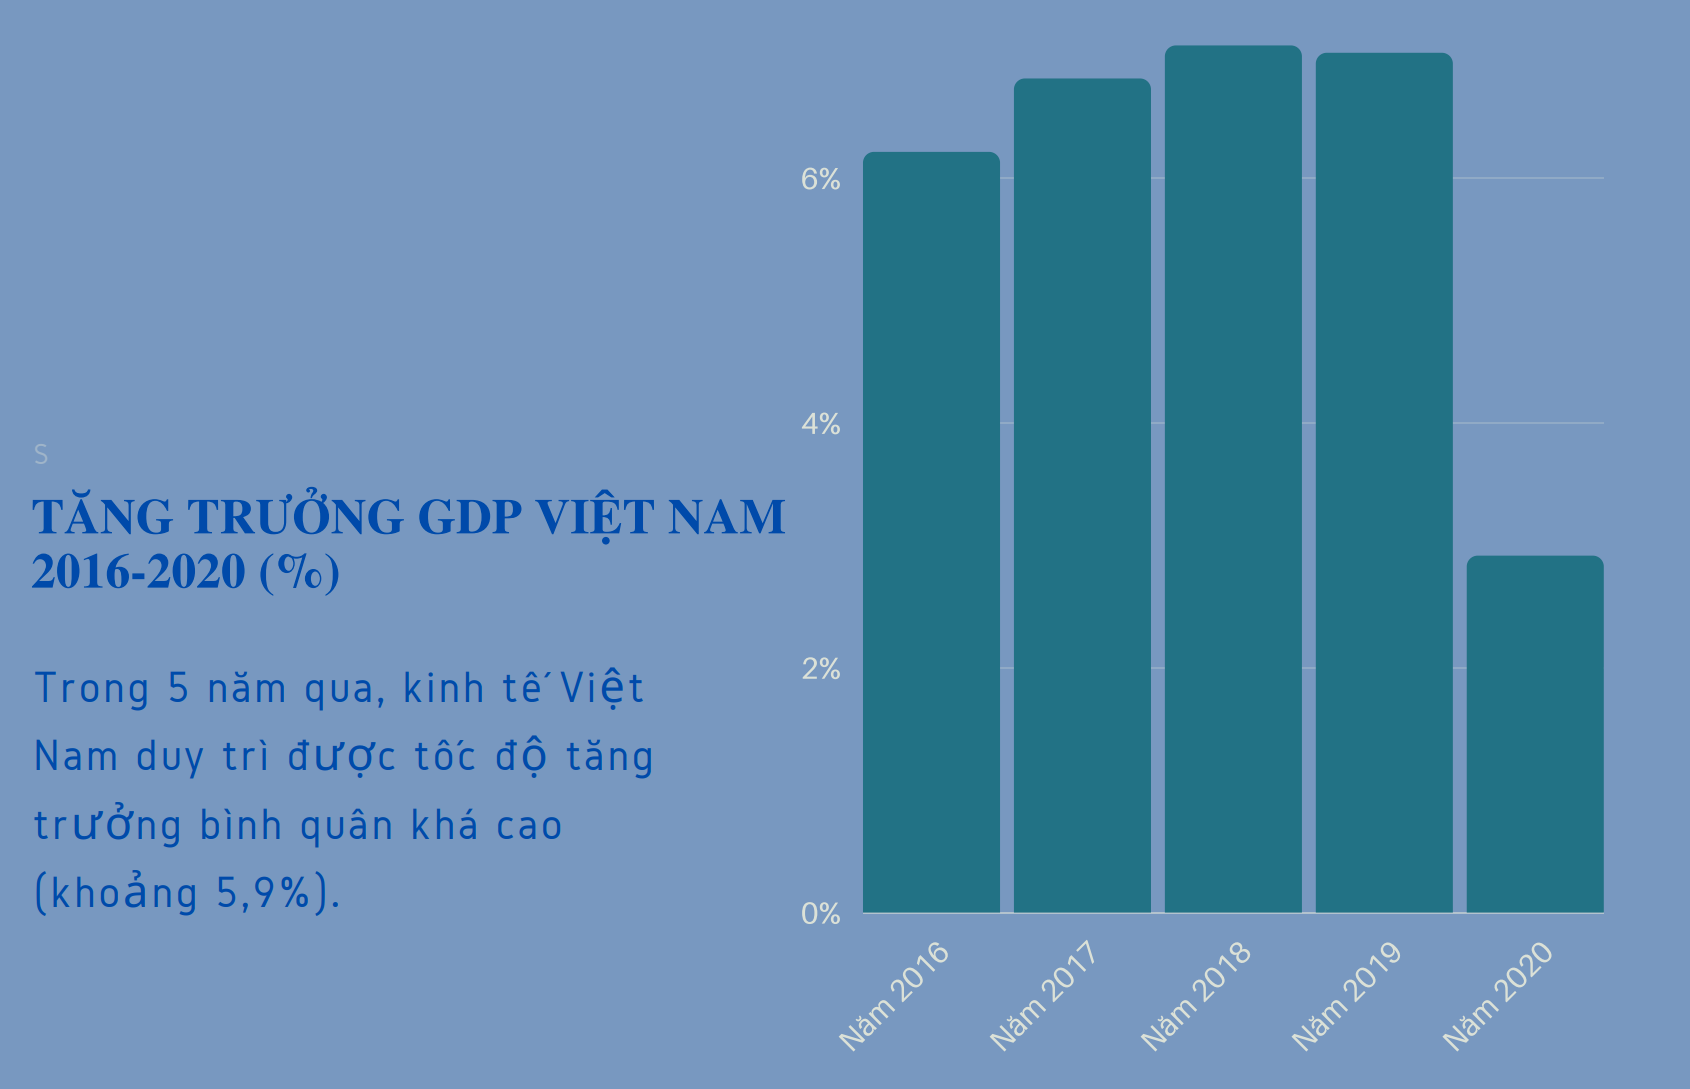 Covid-19 đe dọa tăng trưởng, kinh tế Việt Nam đối mặt 2 thách thức lớn - 2